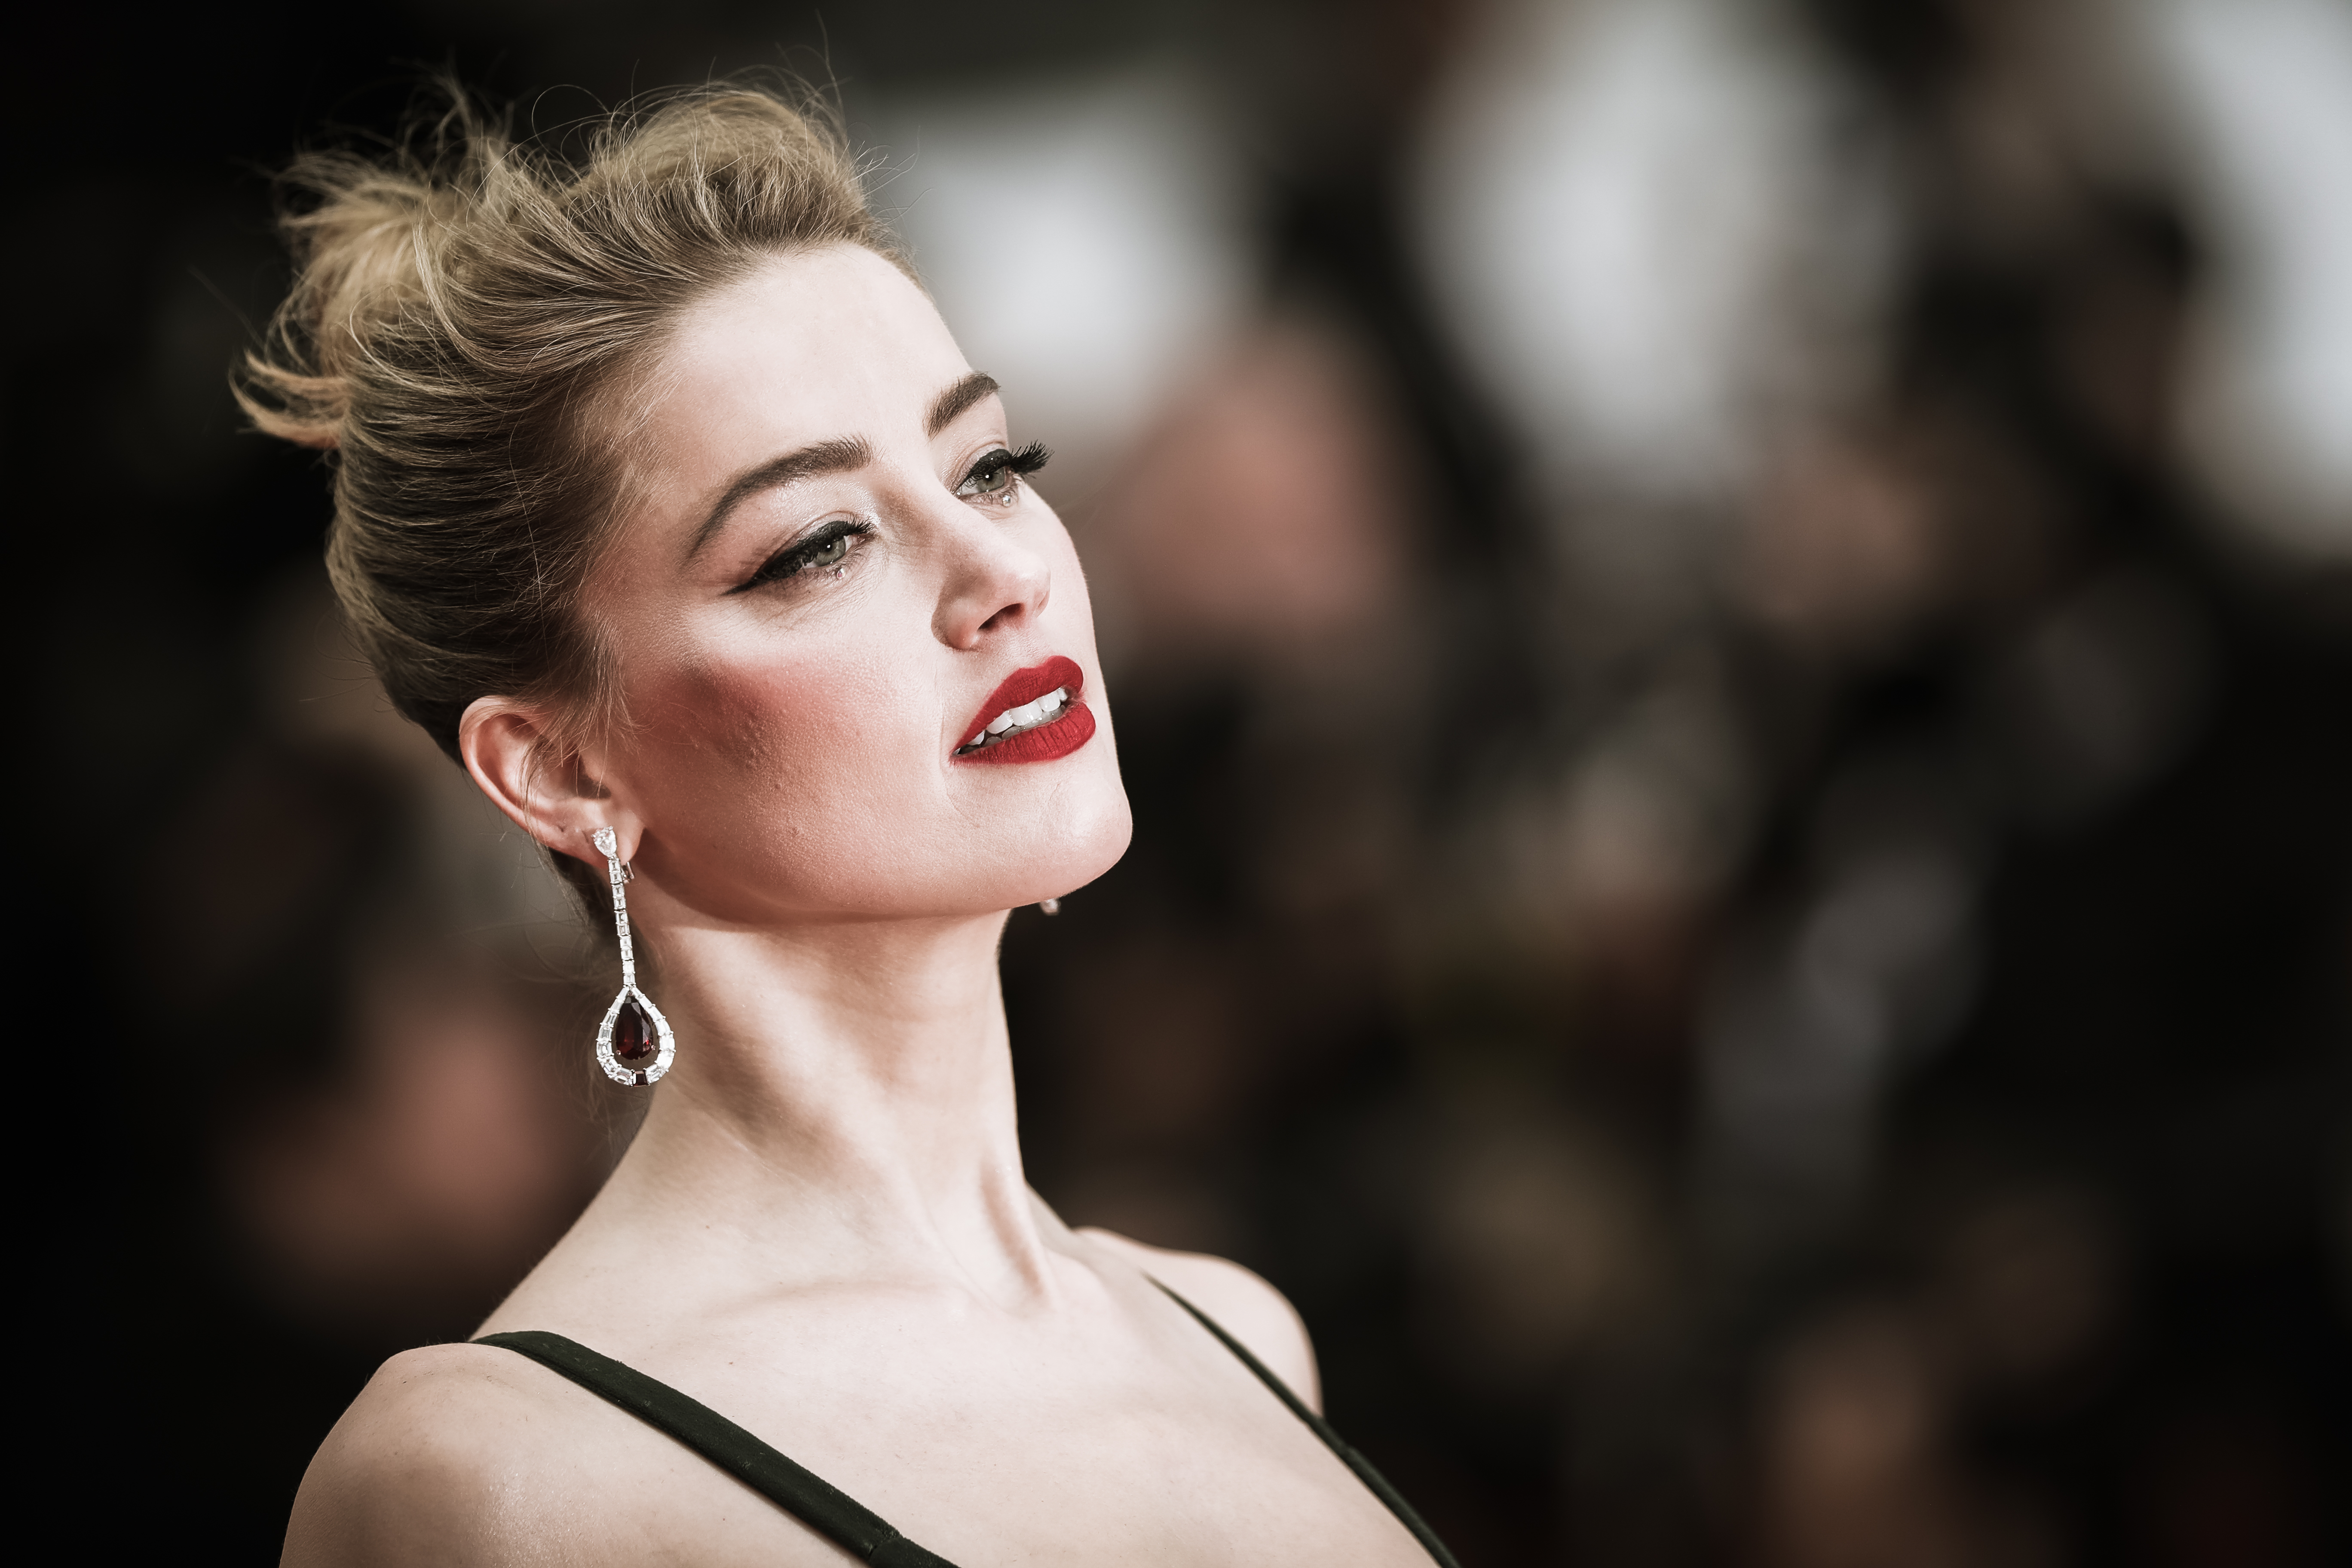 Amber Heard Blonde Earrings Lipstick 5472x3648